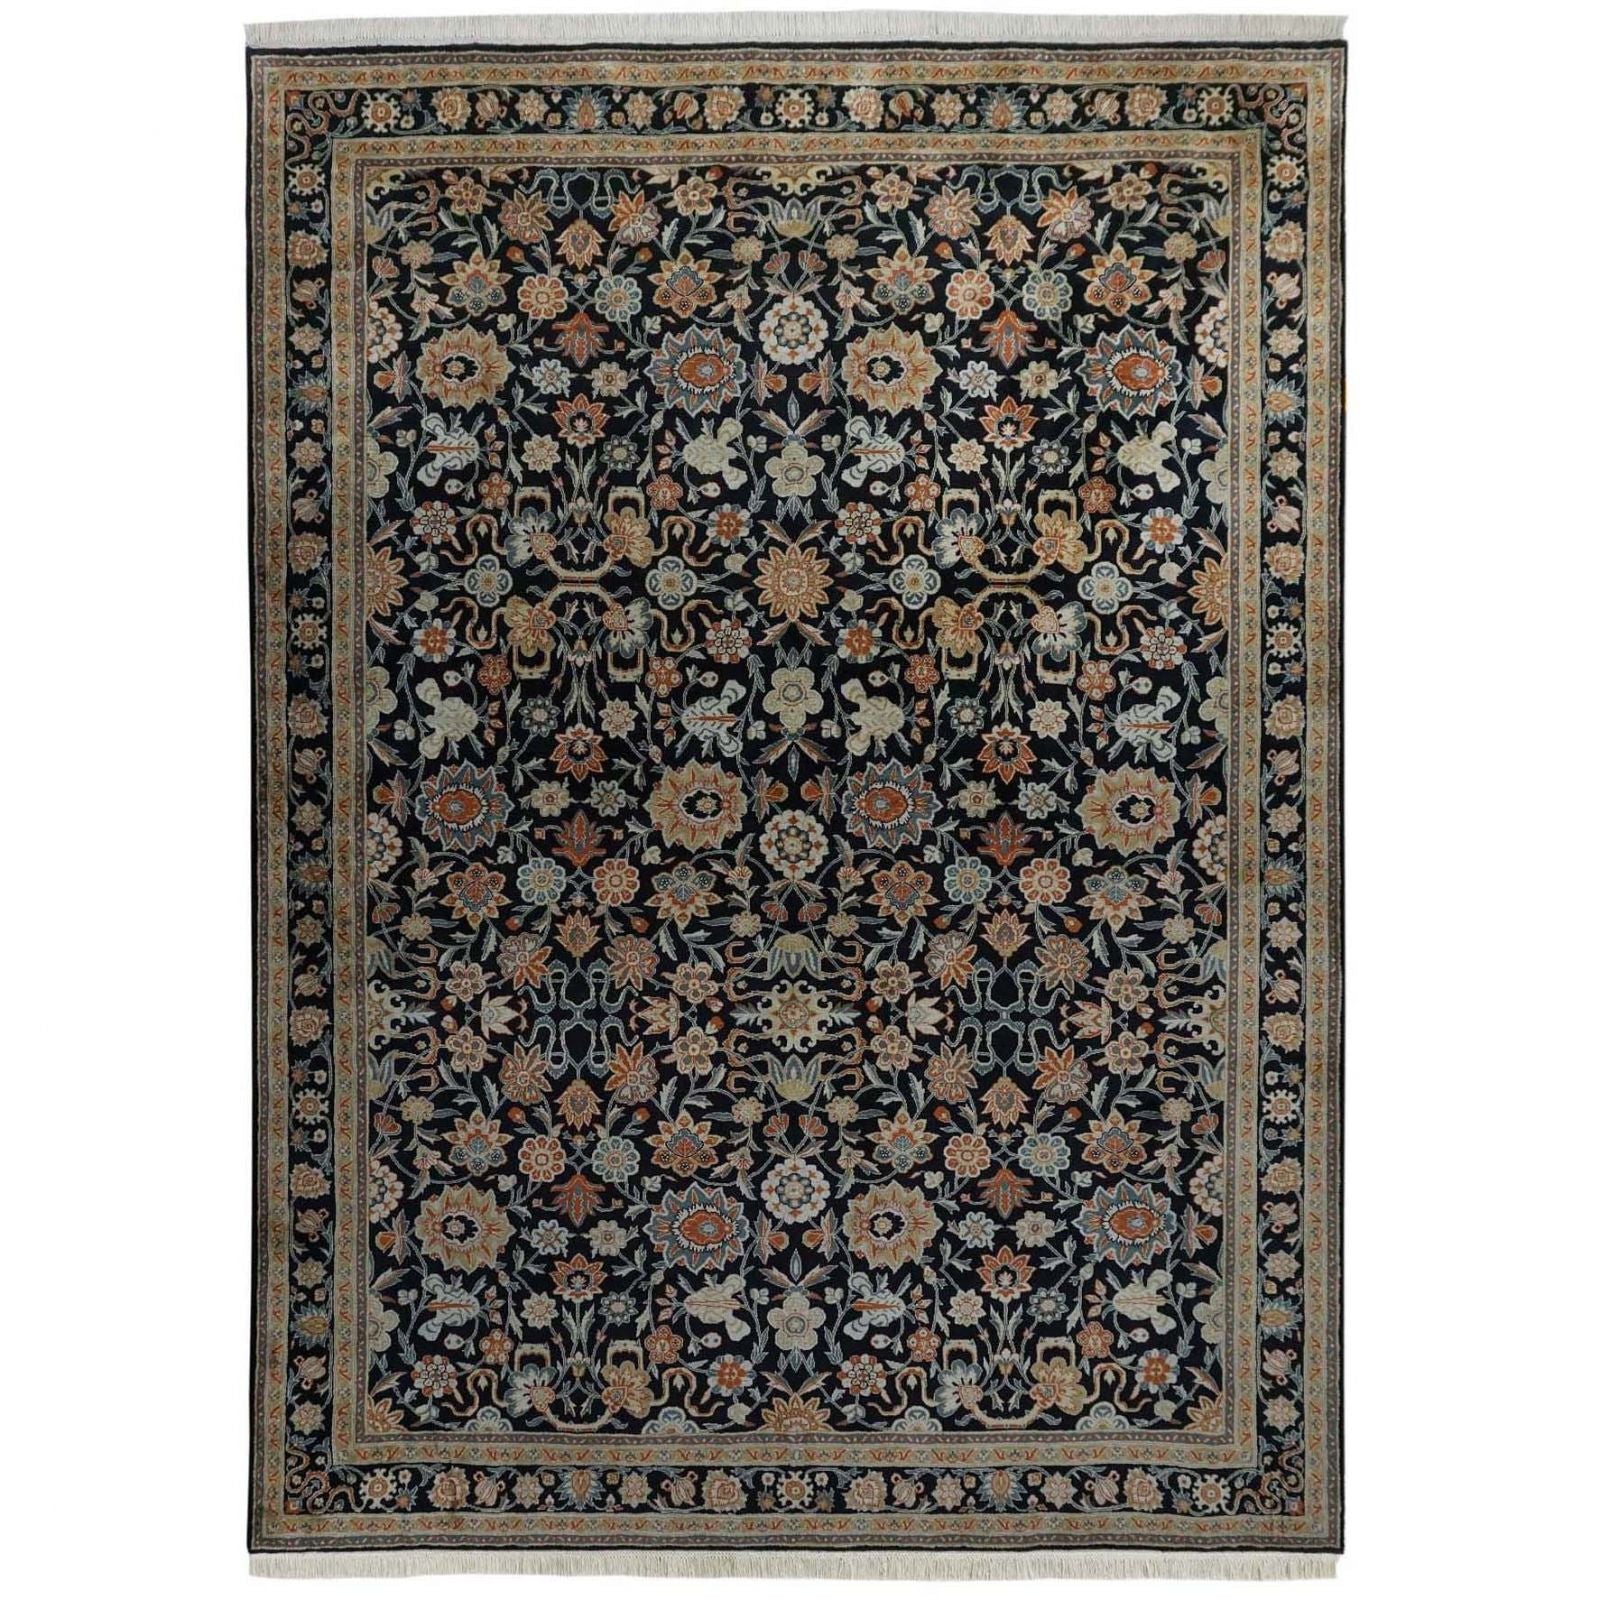 Kerman Persian design 100% silk carpet